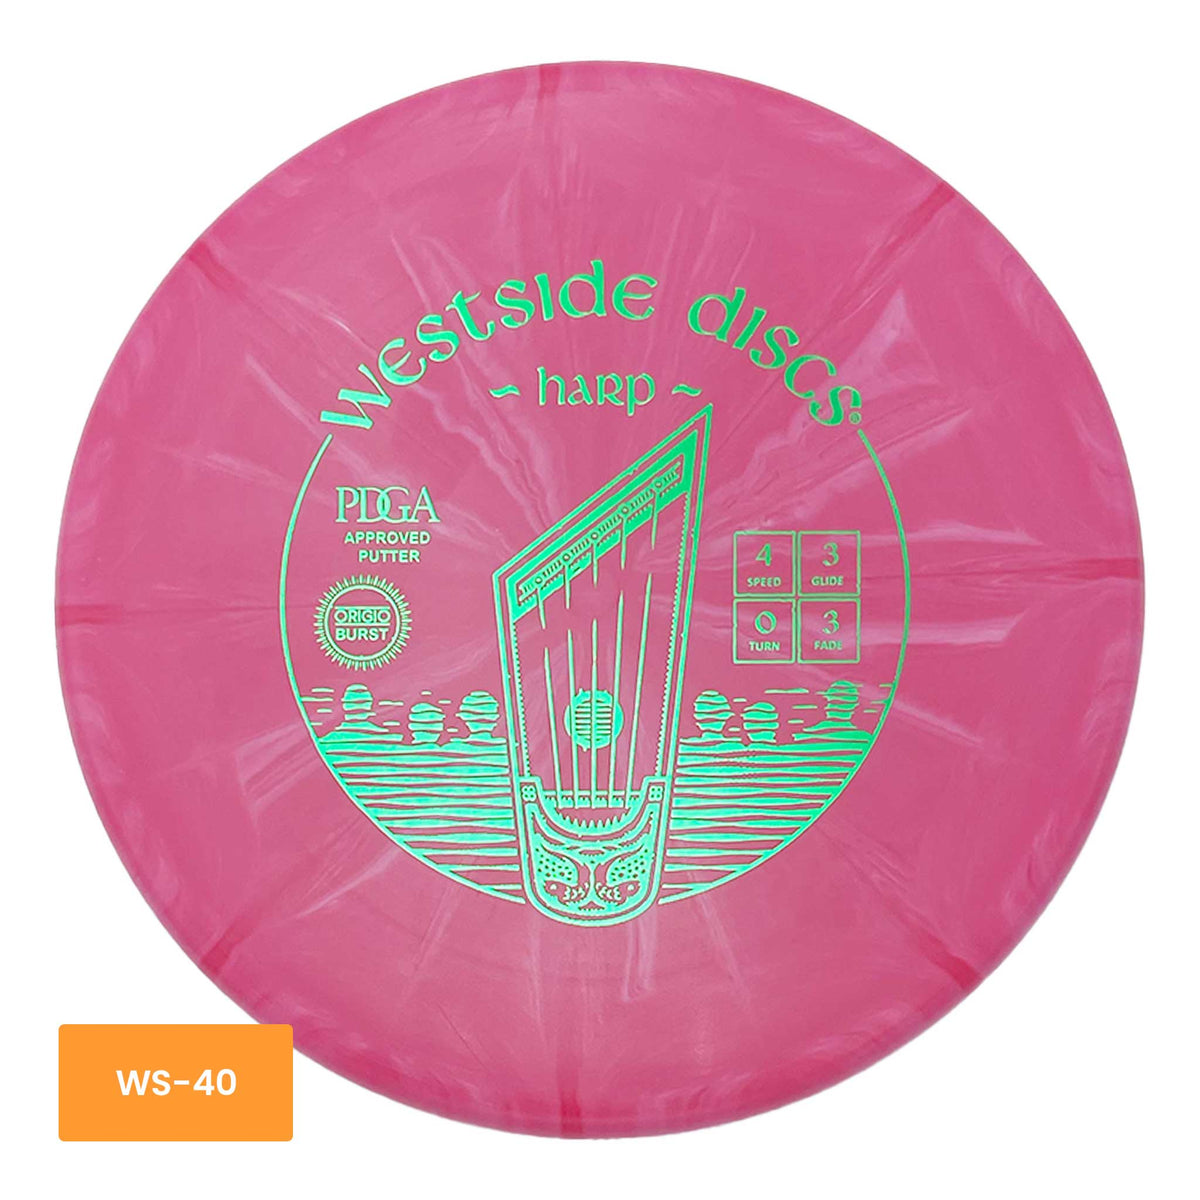 Westside Discs Origio Harp midrange putter - Pink